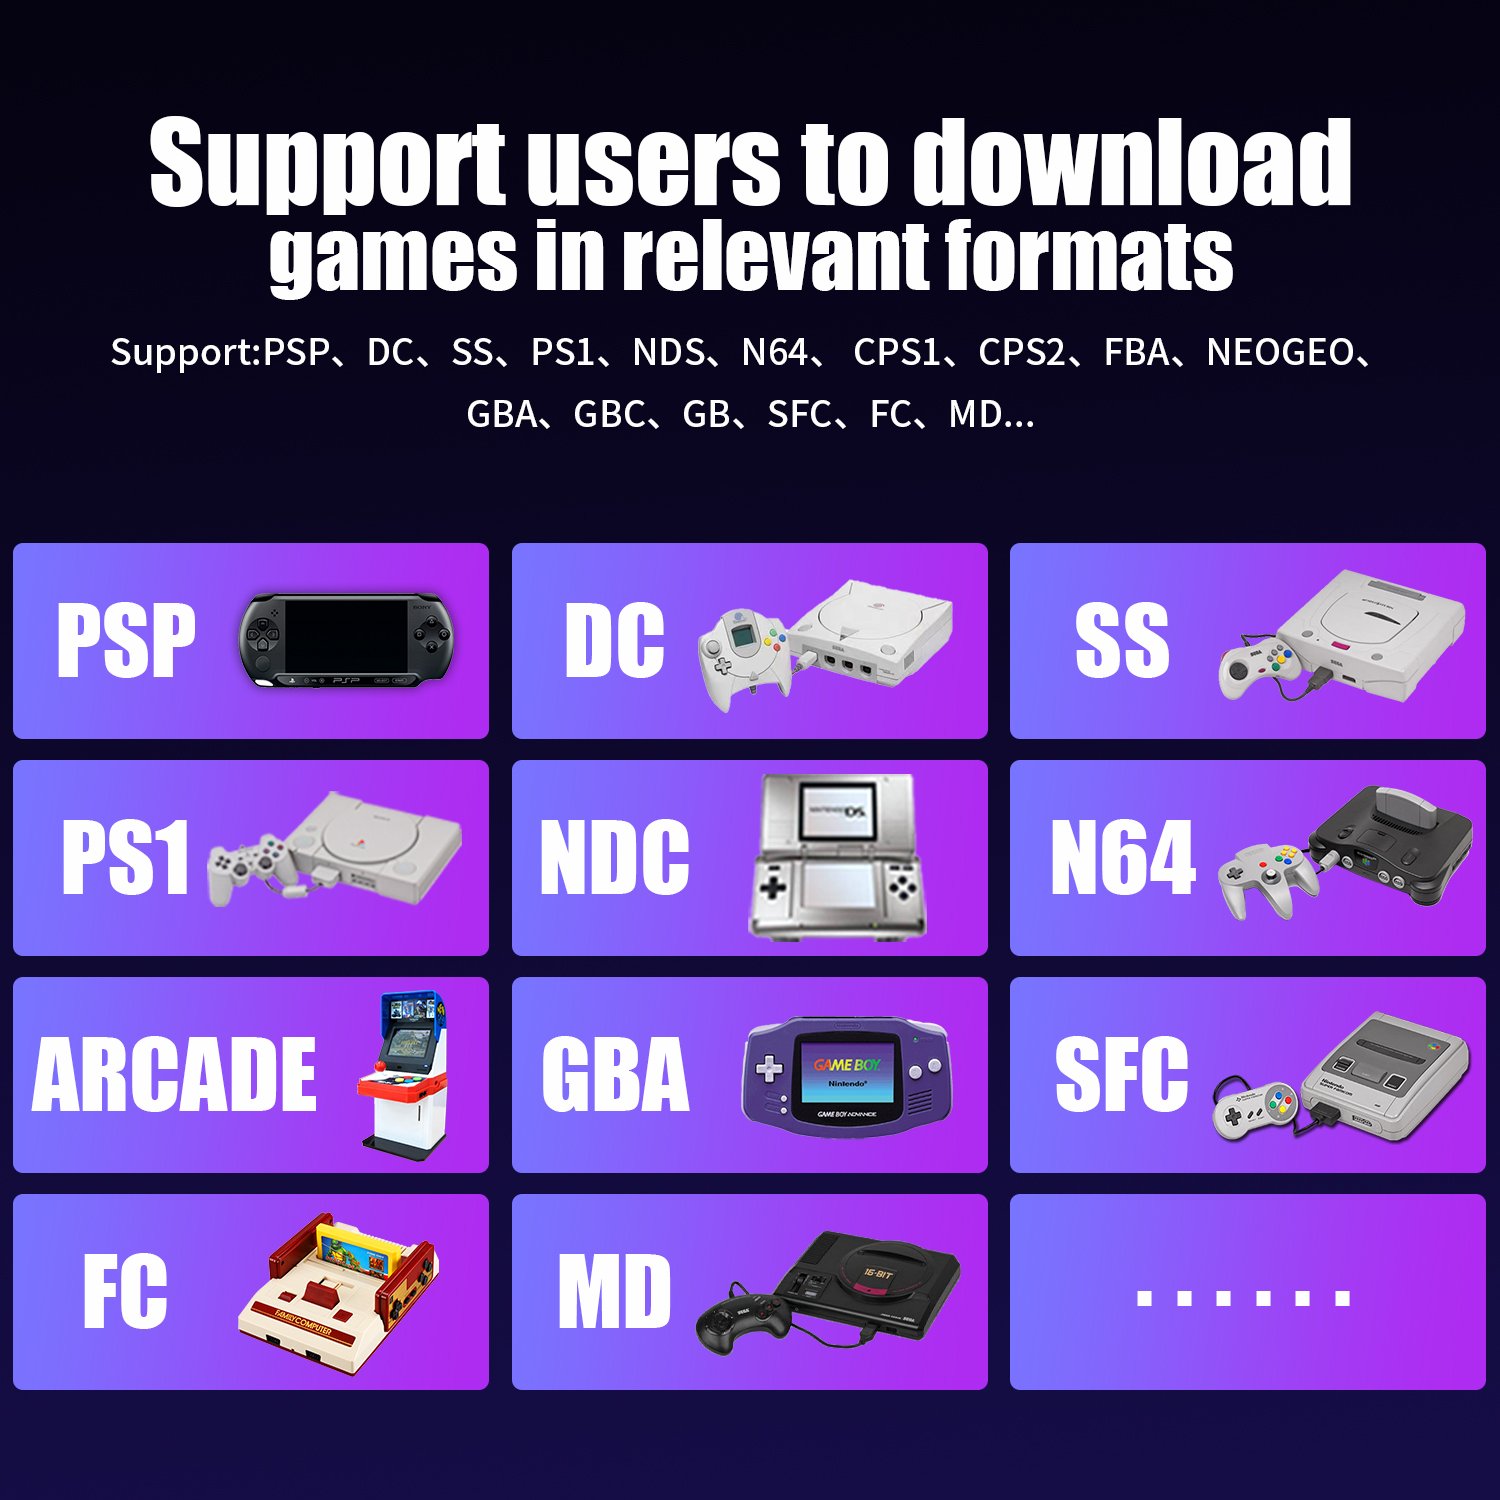 L'RG353P supporta gli utenti nel download di giochi in formati rilevanti